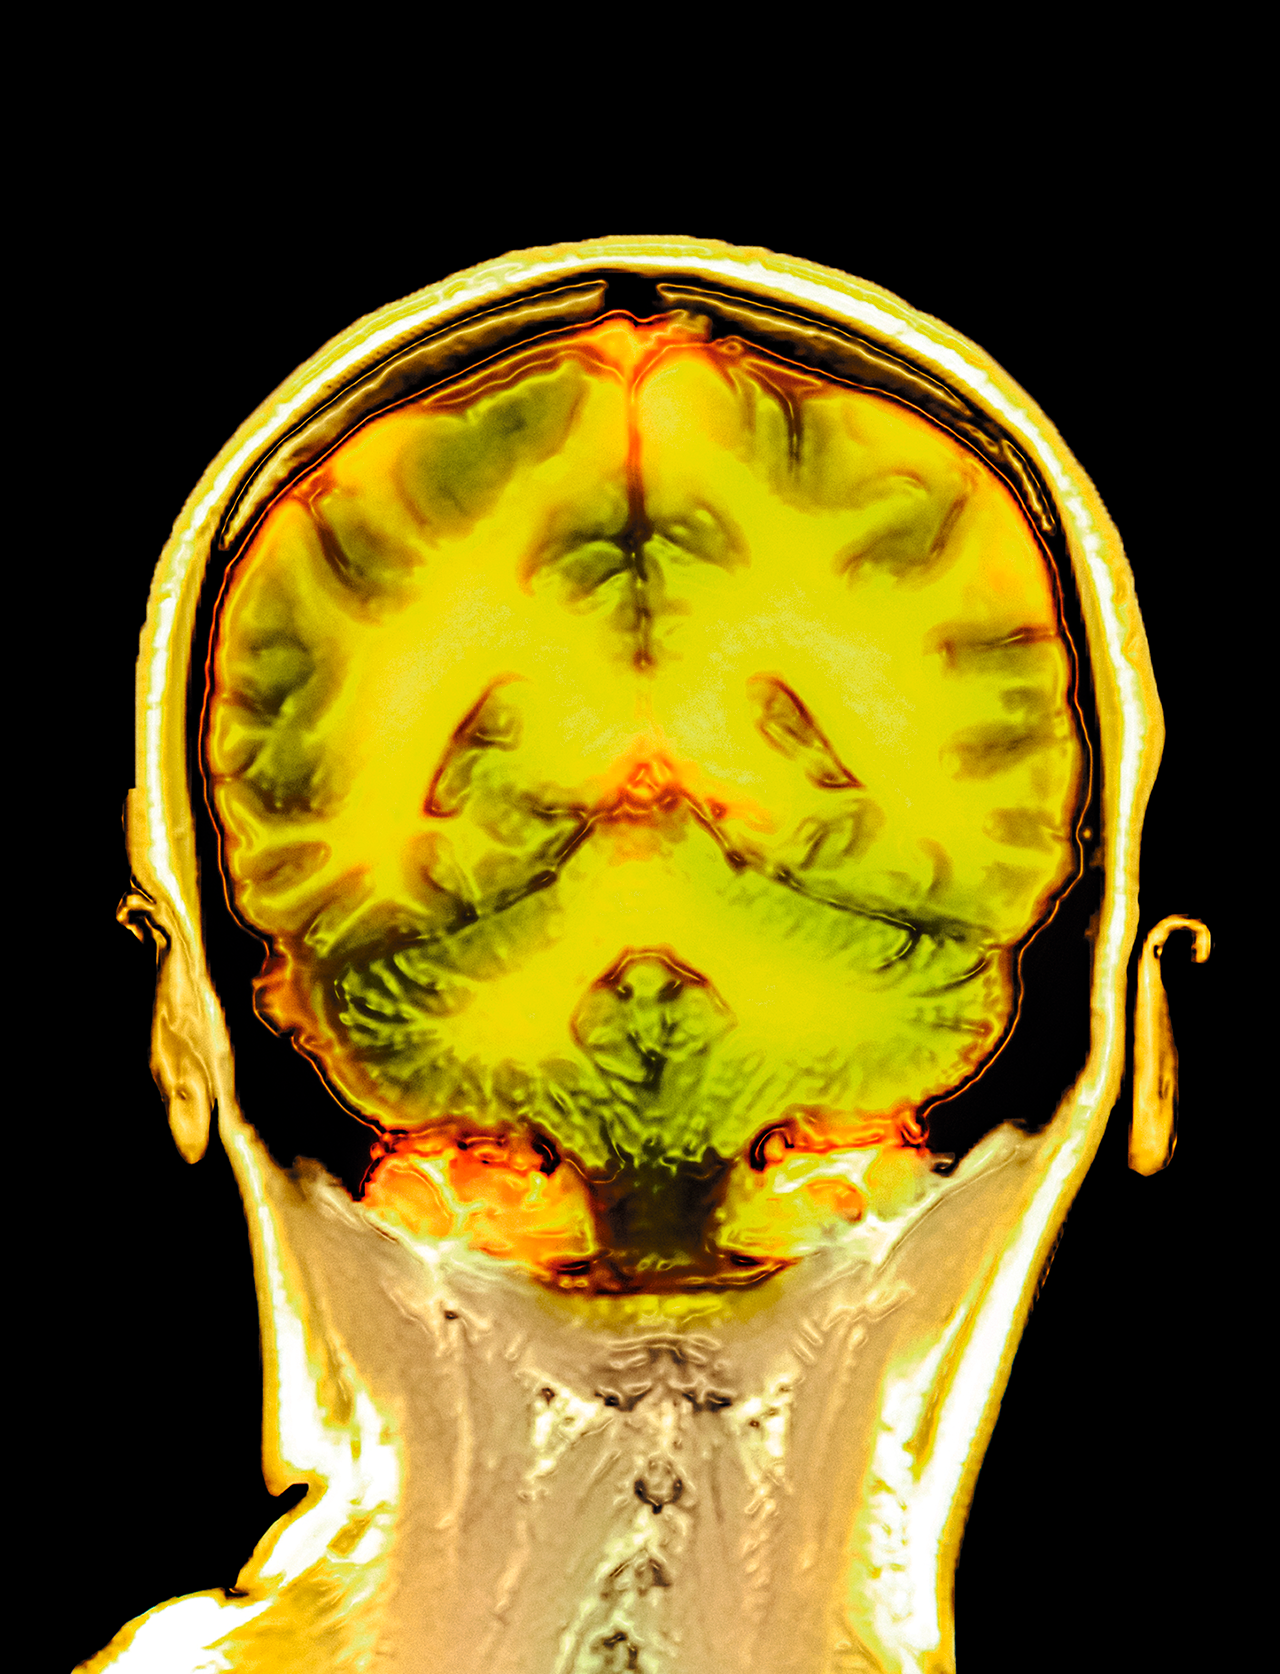 Resonancia magnética a color del cerebro sano de una mujer de 32 años